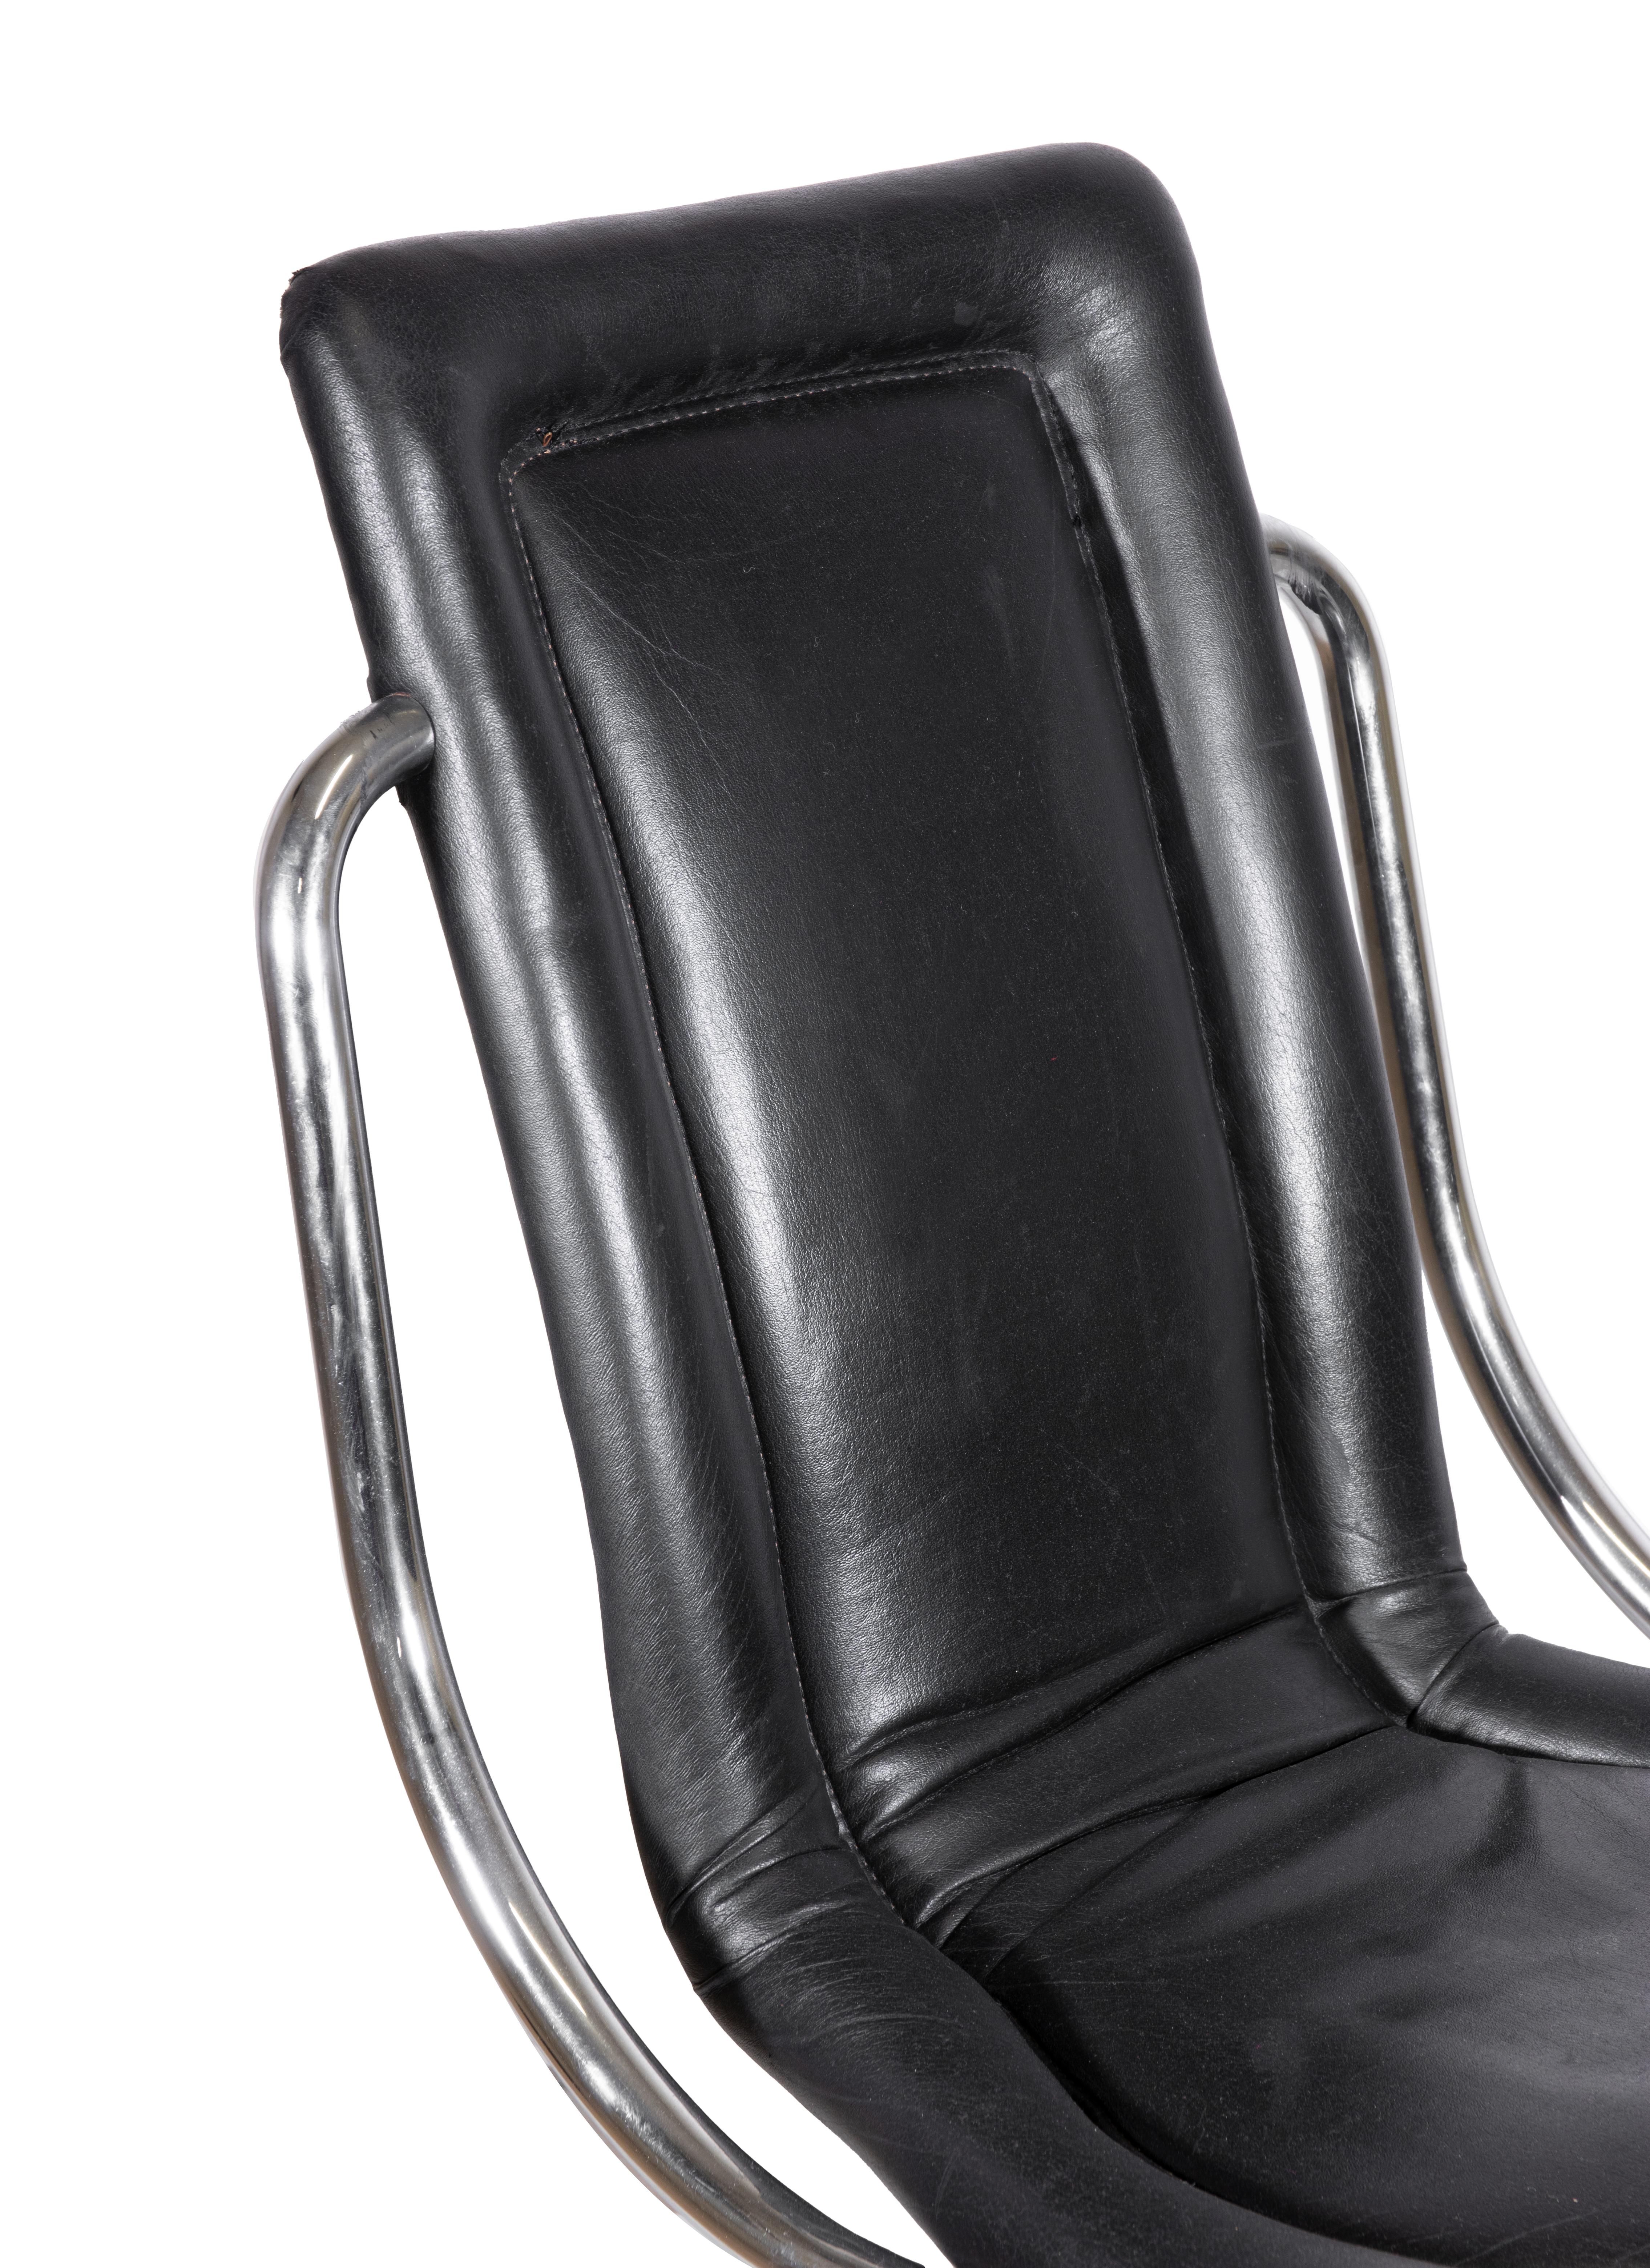 Sechs Stühle von Tecnosalotto, Italien 1970er Jahre.

Schlauchförmiger Stahl und schwarzes Leder.

H70 x 58 x 47 cm. 

Sitztiefe 39 cm, Sitzhöhe 44 cm. 

Guter Zustand.